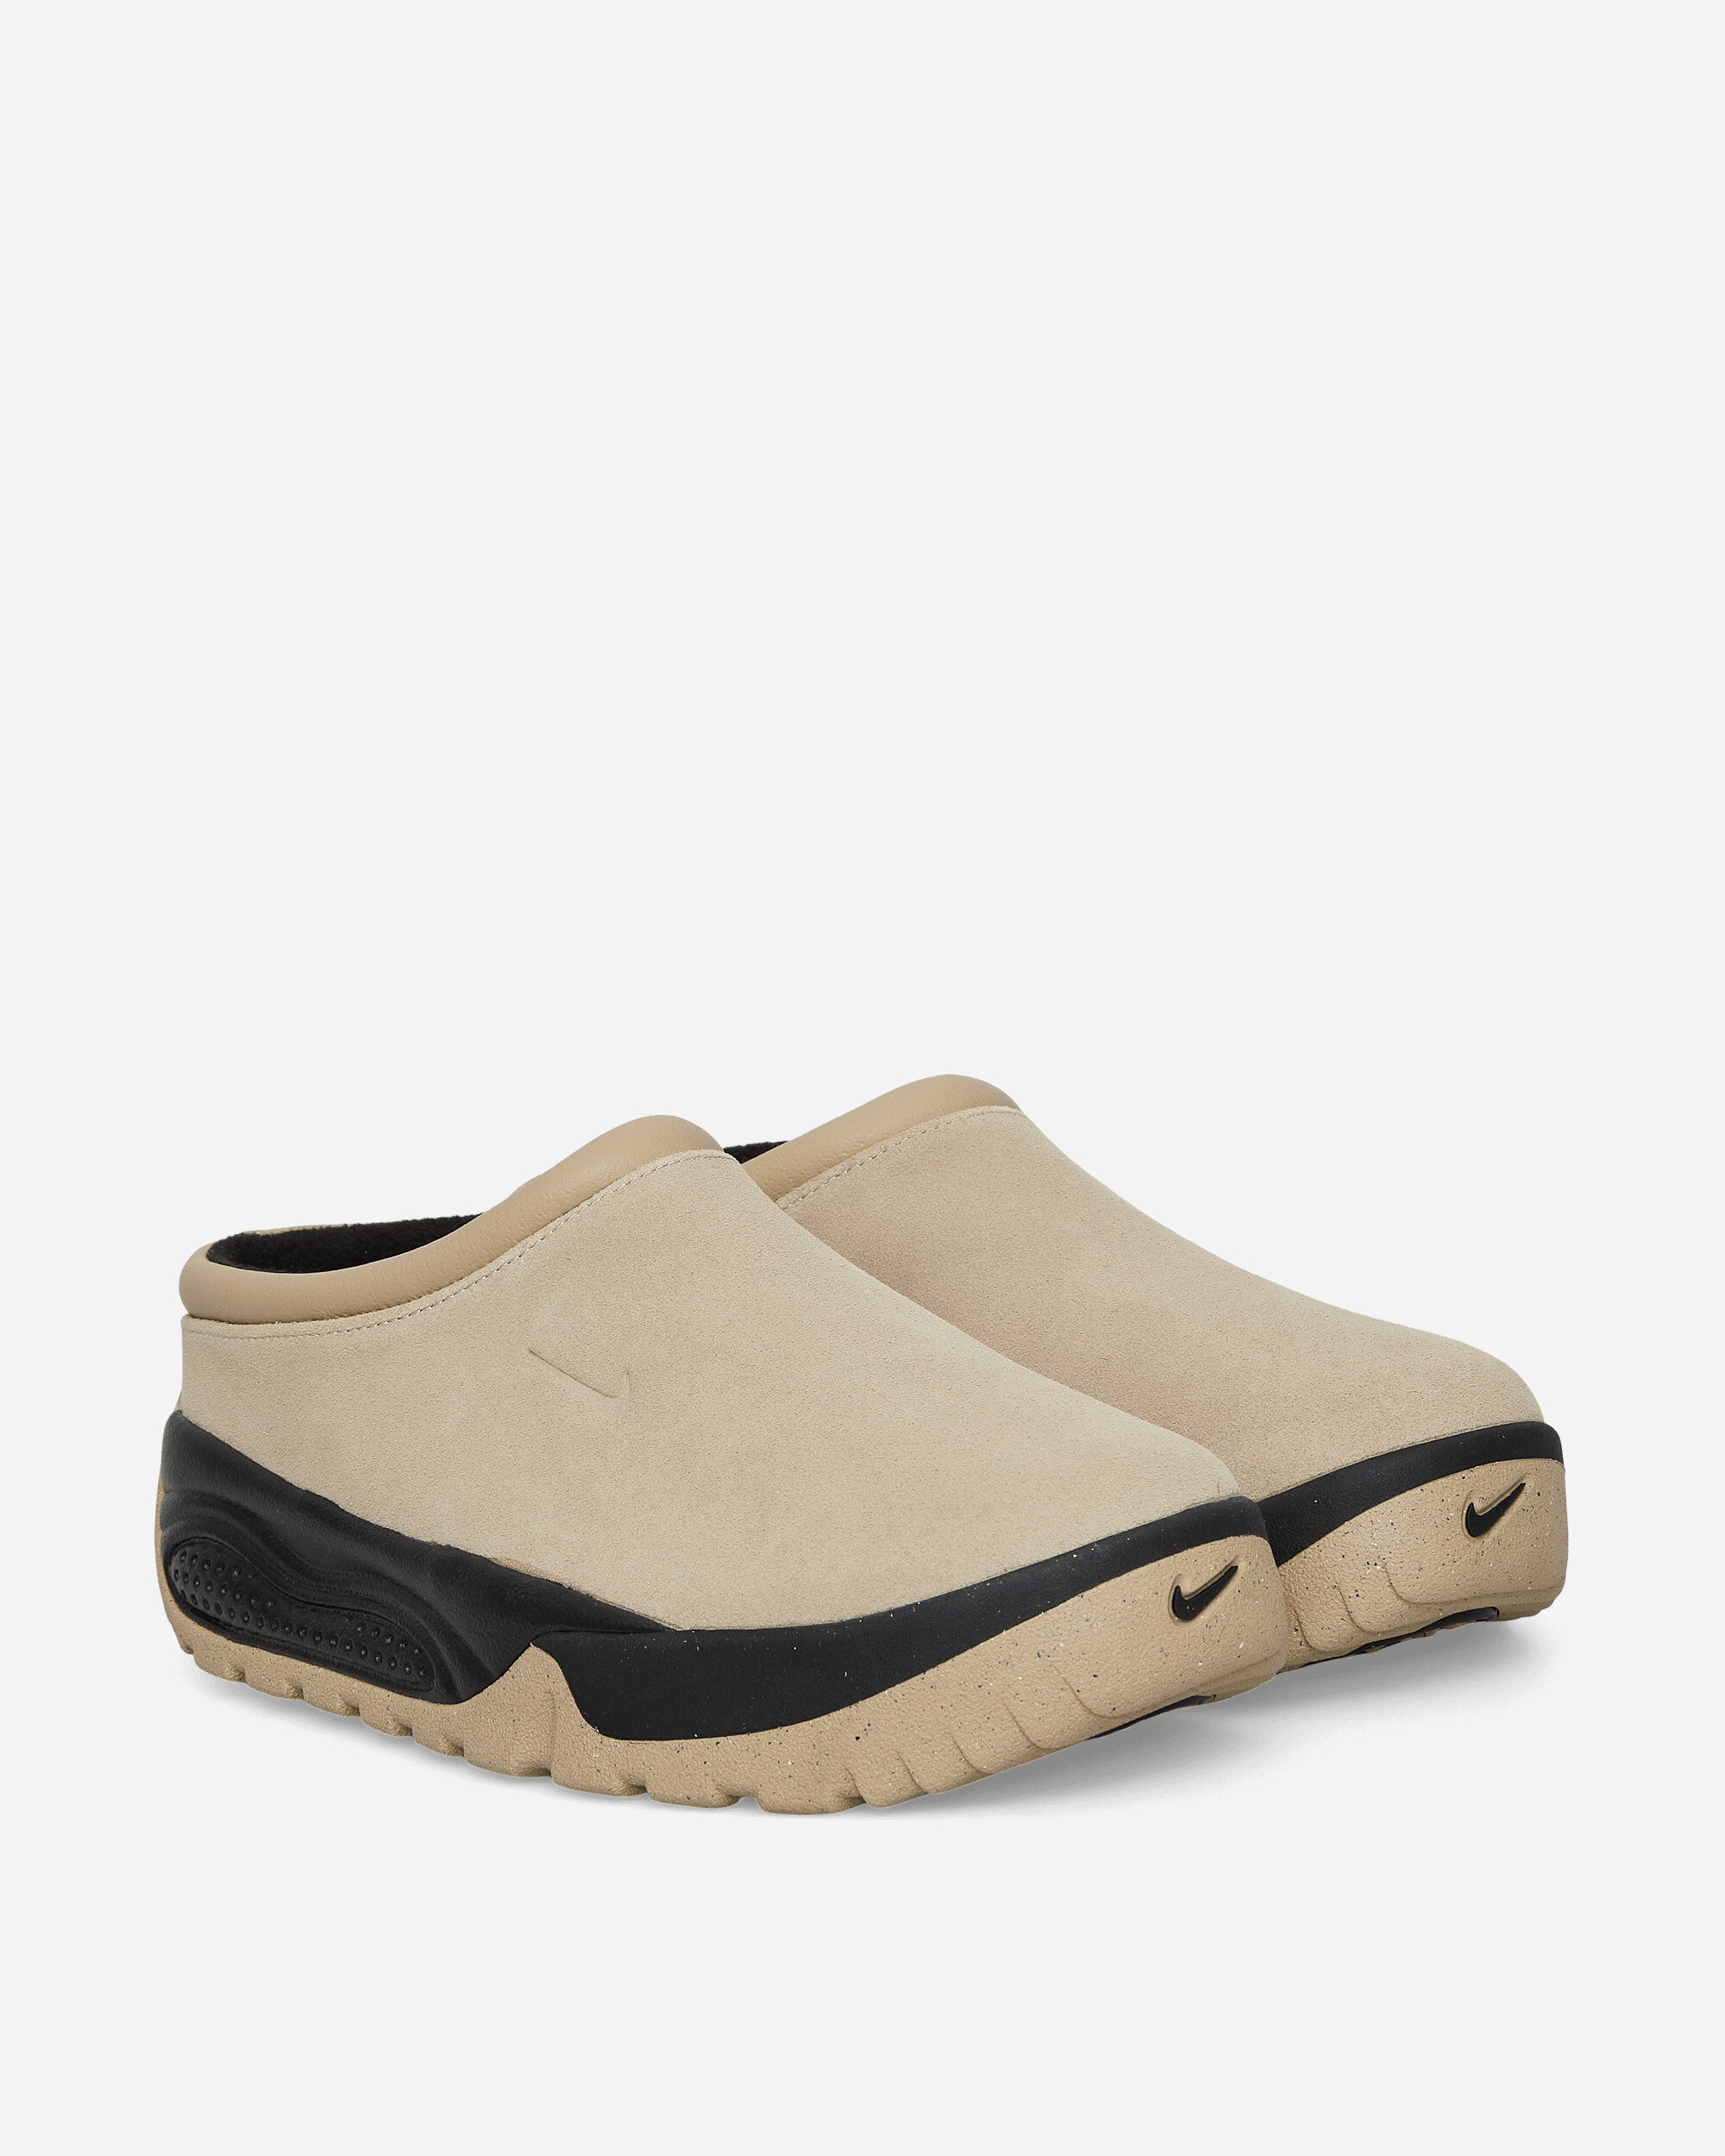 Nike Acg Rufus Limestone/Limestone Sneakers Low FV2923-200